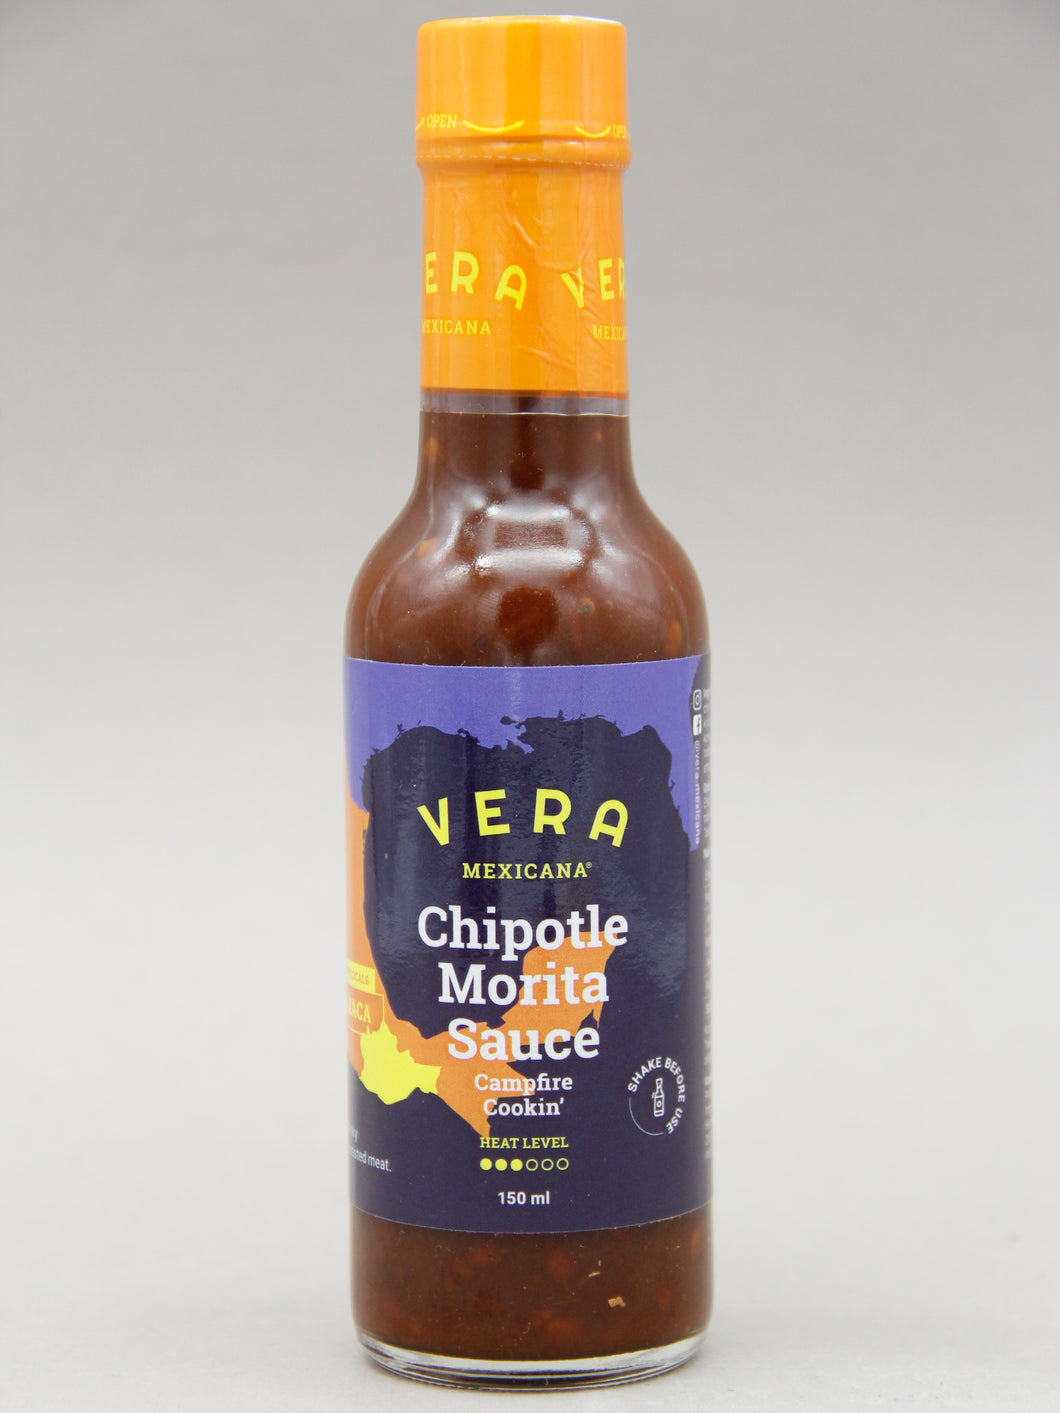 Vera Mexicana, Chipotle Morita Sauce, Mexico (0%, 150ml)